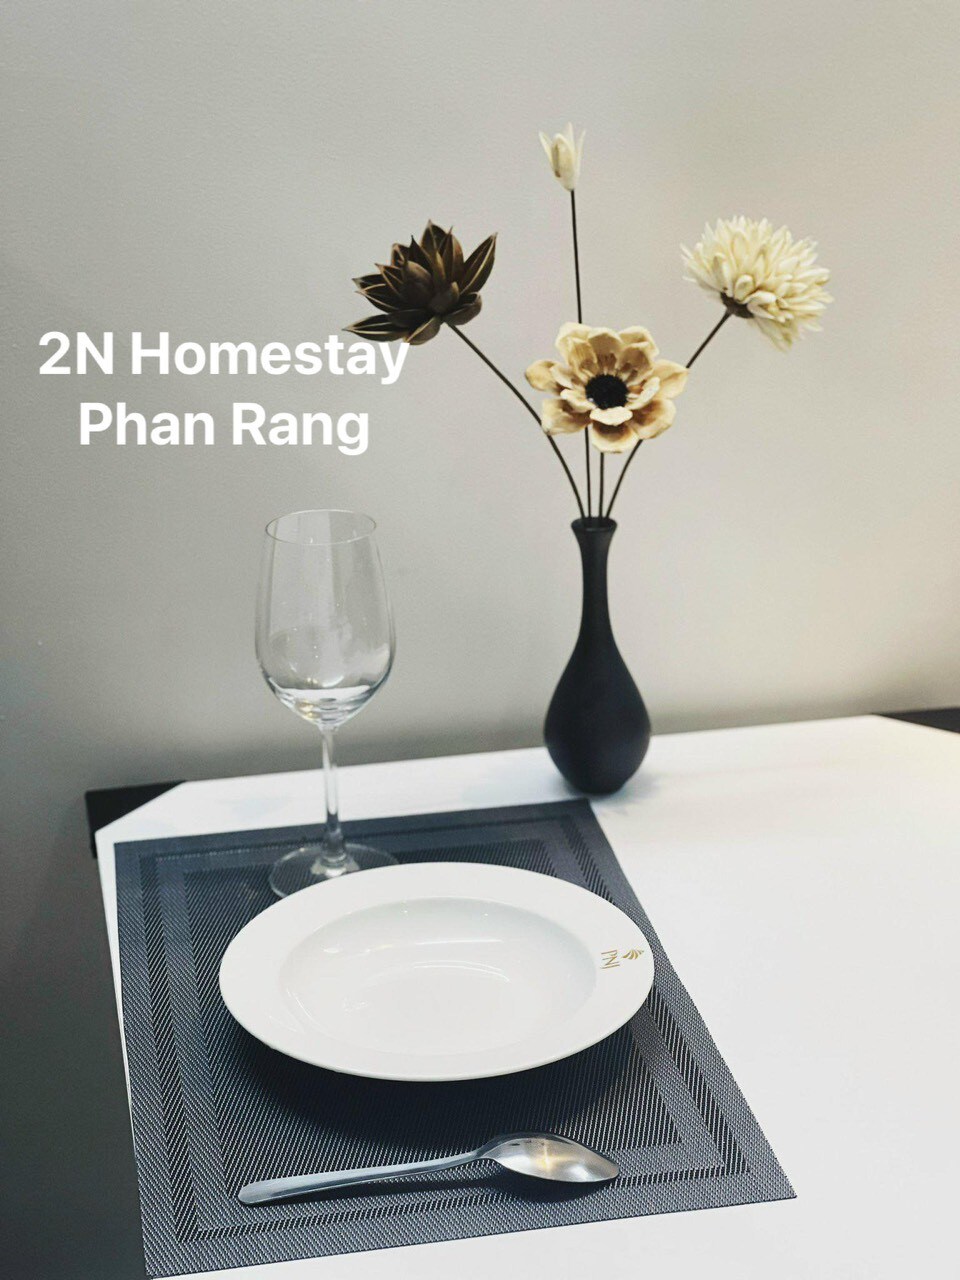 2N Homestay Phan Rang公寓